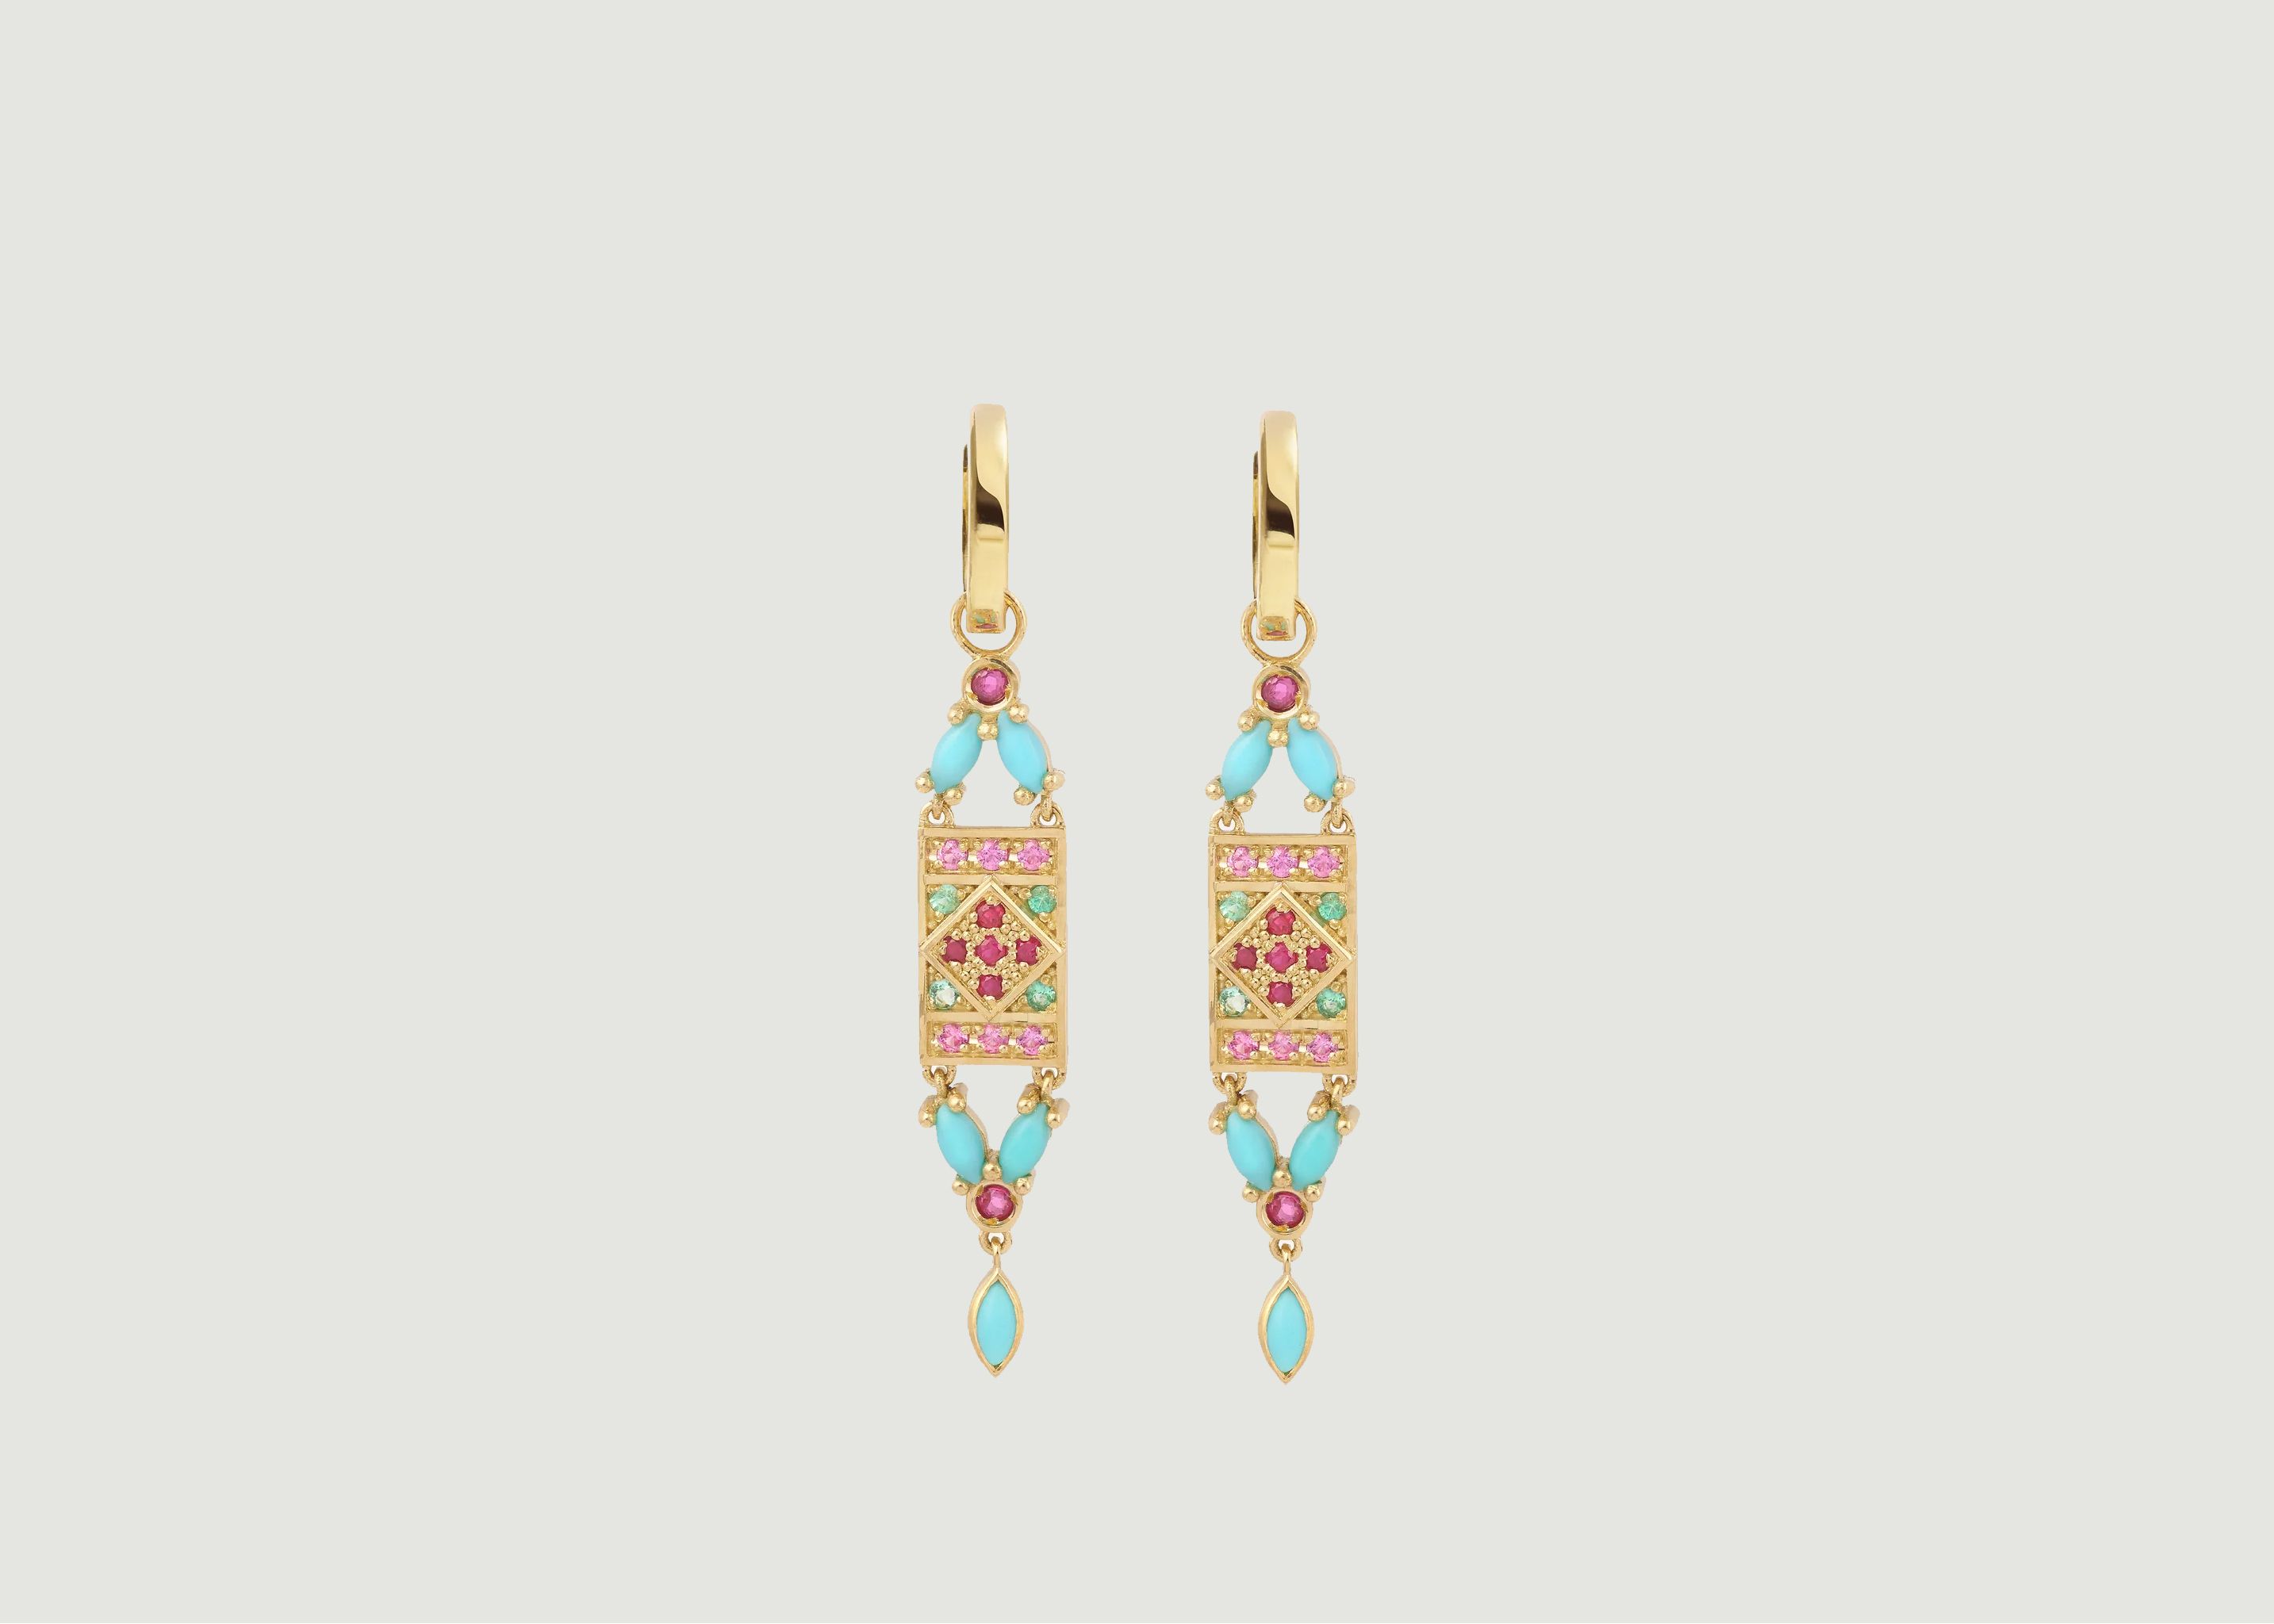 Ava 1 Turquoise earrings - Sophie d'Agon